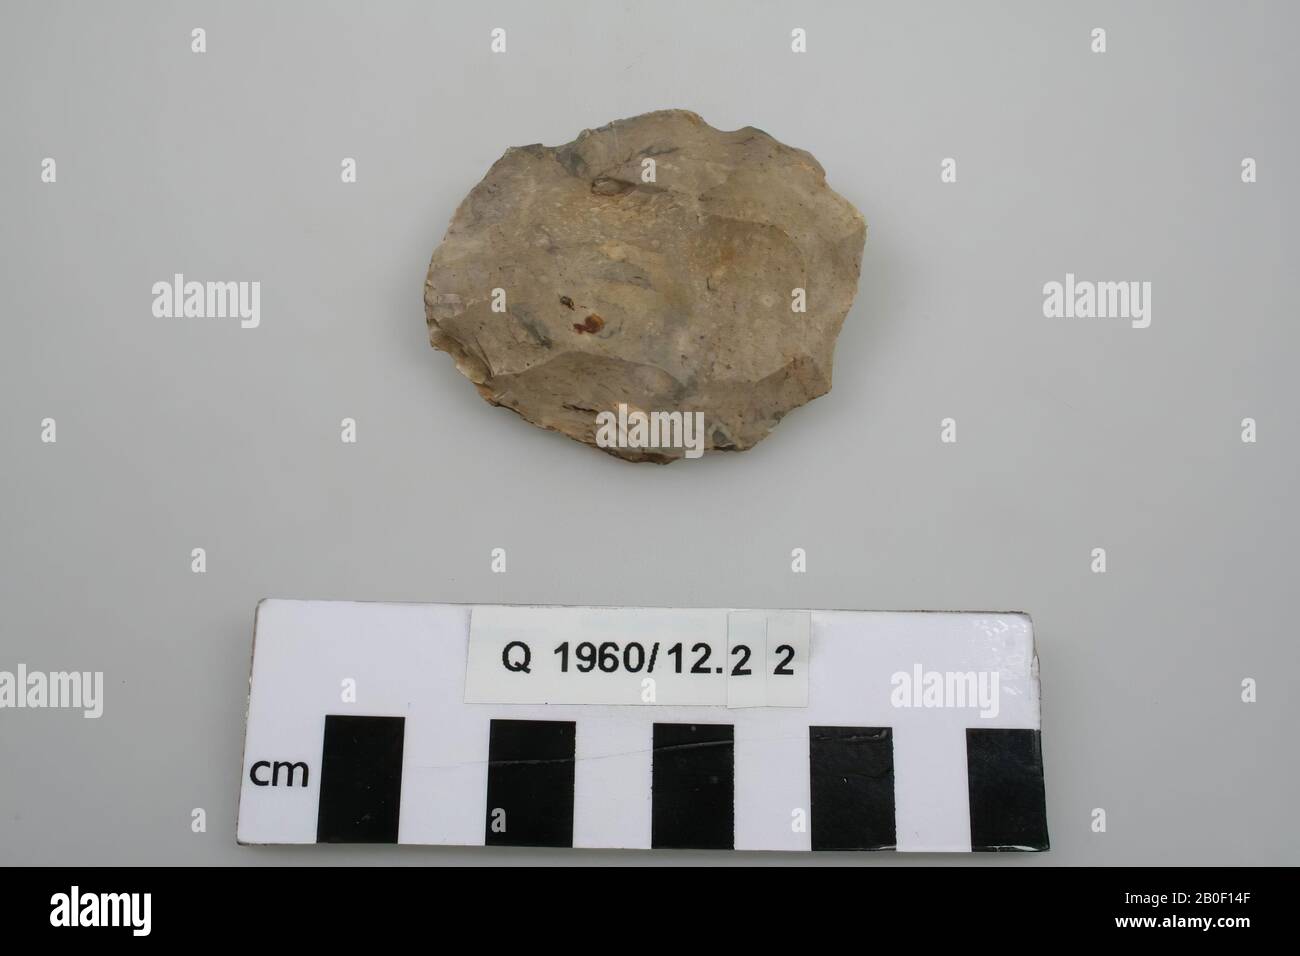 Herramienta Flint., herramienta, piedra, Flint, prehistoria, Francia, Unknown, Rouen, Mont St Aignan Foto de stock